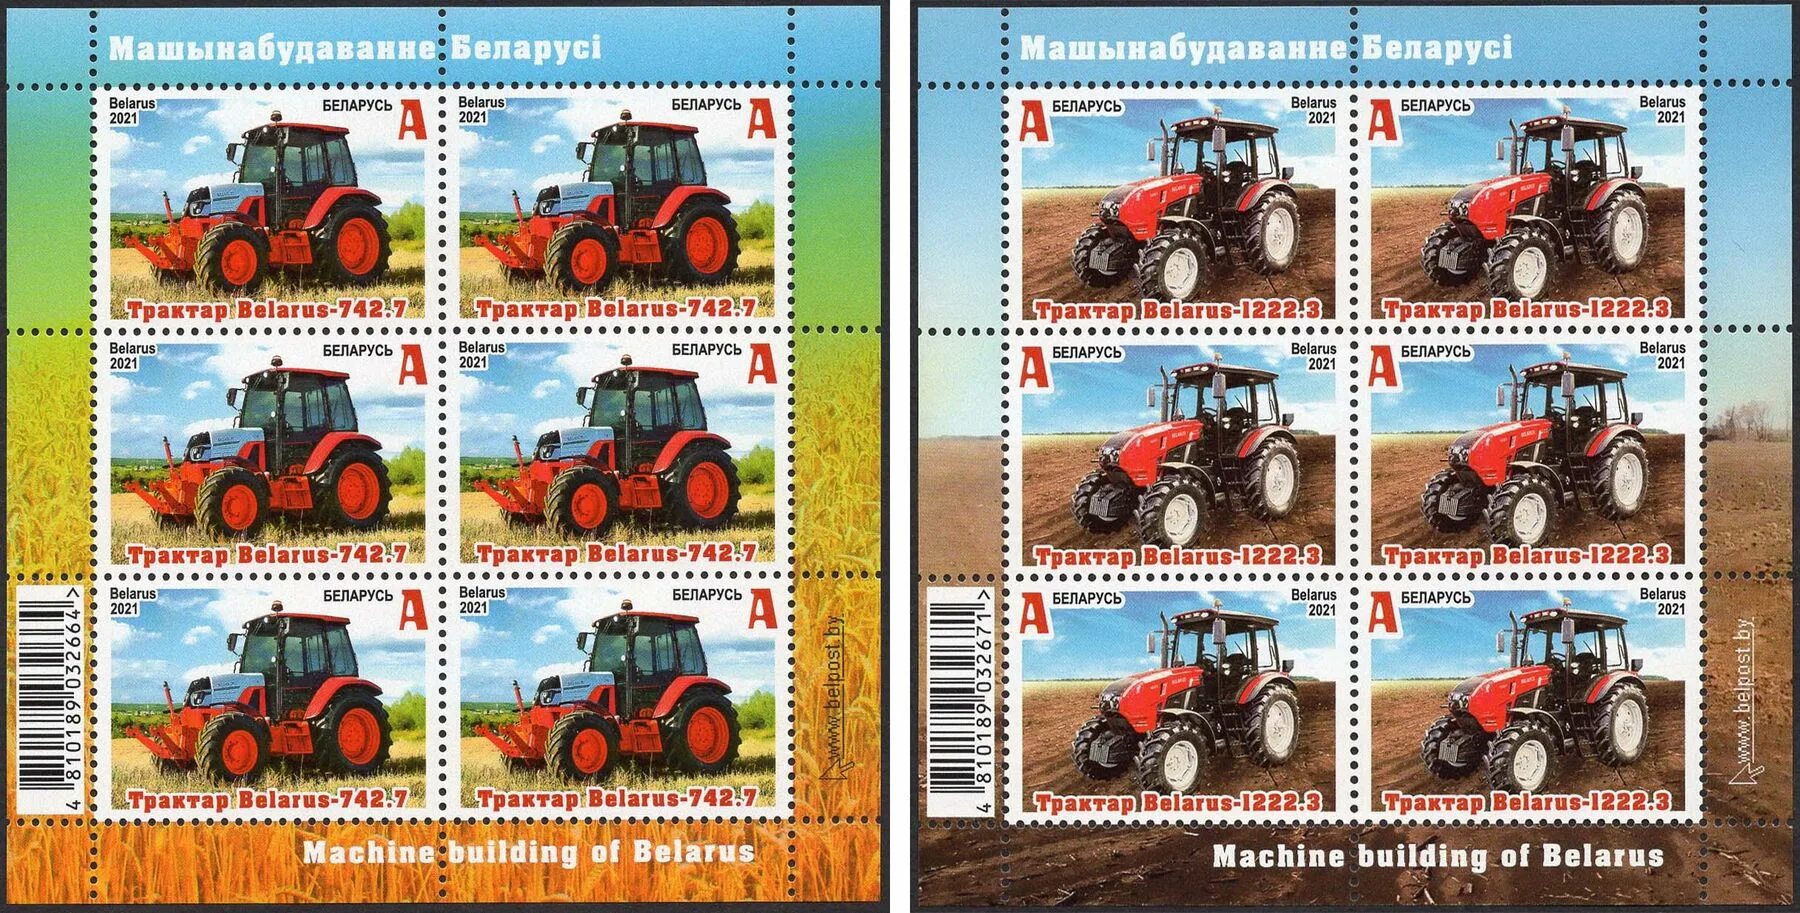 Машиностроение 2021. Марки тракторов Беларусь. Белорусские тракторные марки. Белоруссия Машиностроение трактора. Много тракторов на одном листе.